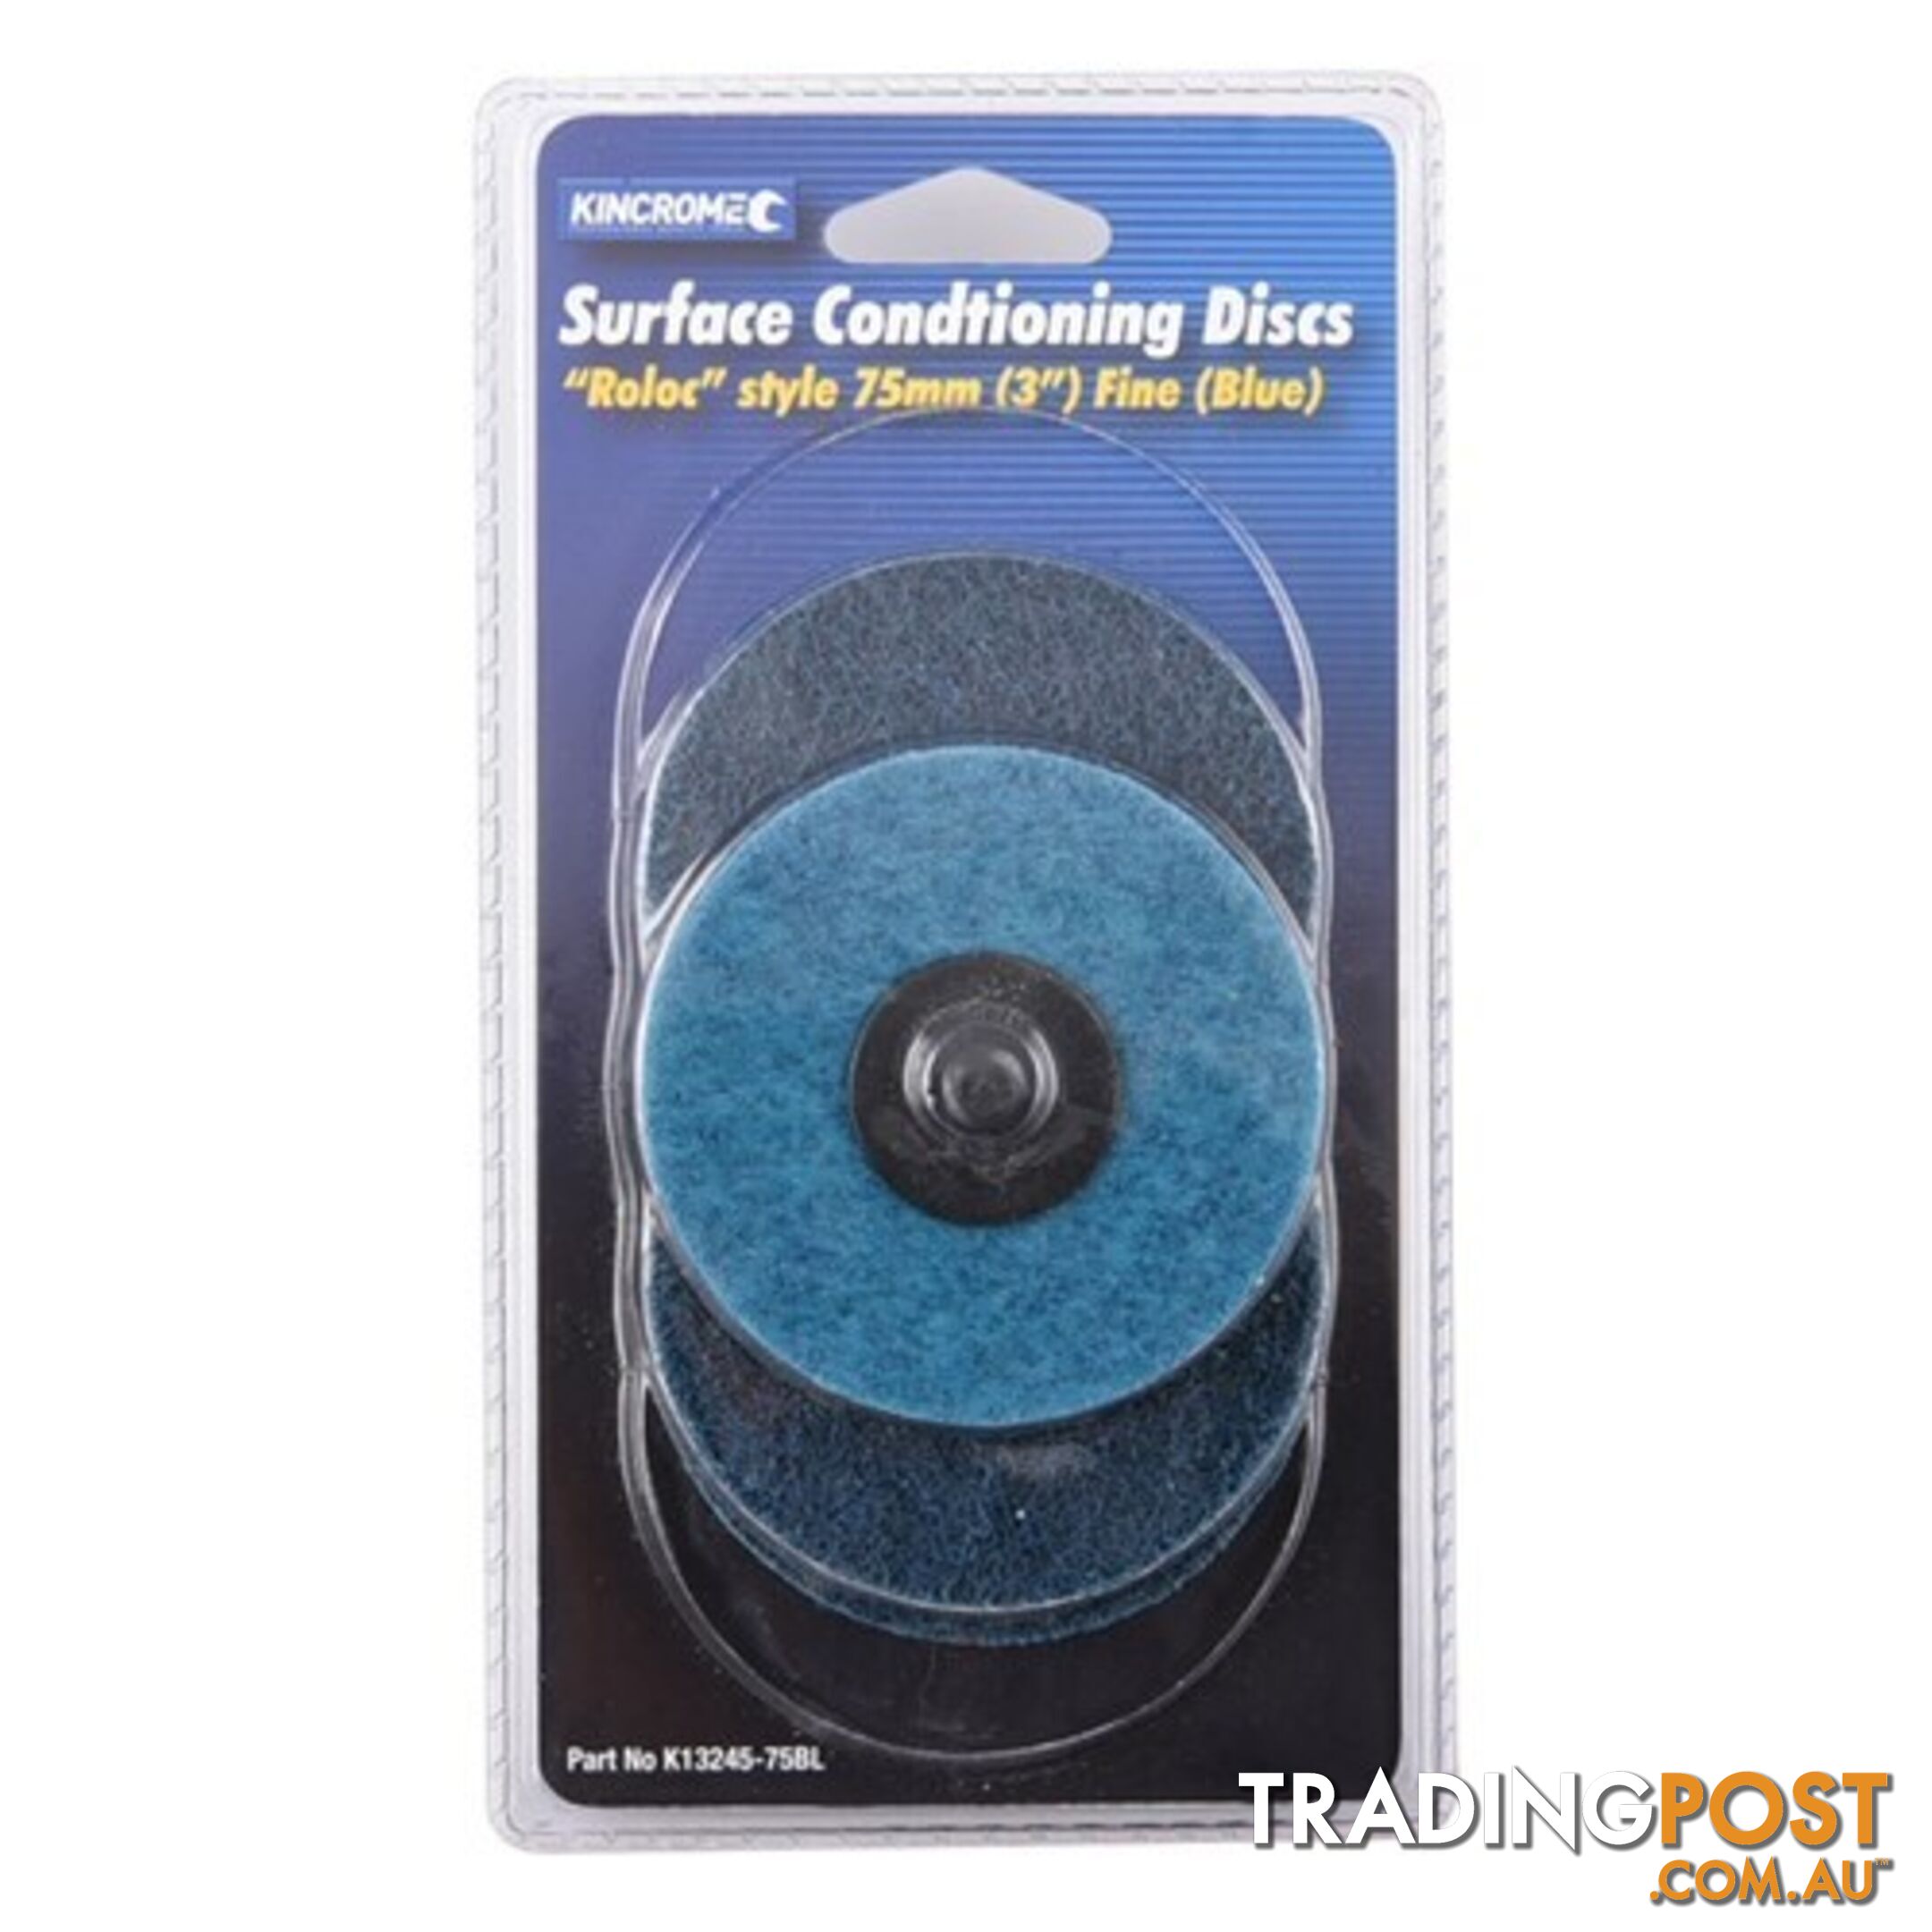 âRolocâ Style Sanding Discs 3â (75mm) 80 Grit (Fine) 5 Pack Kincrome K13245-75BL